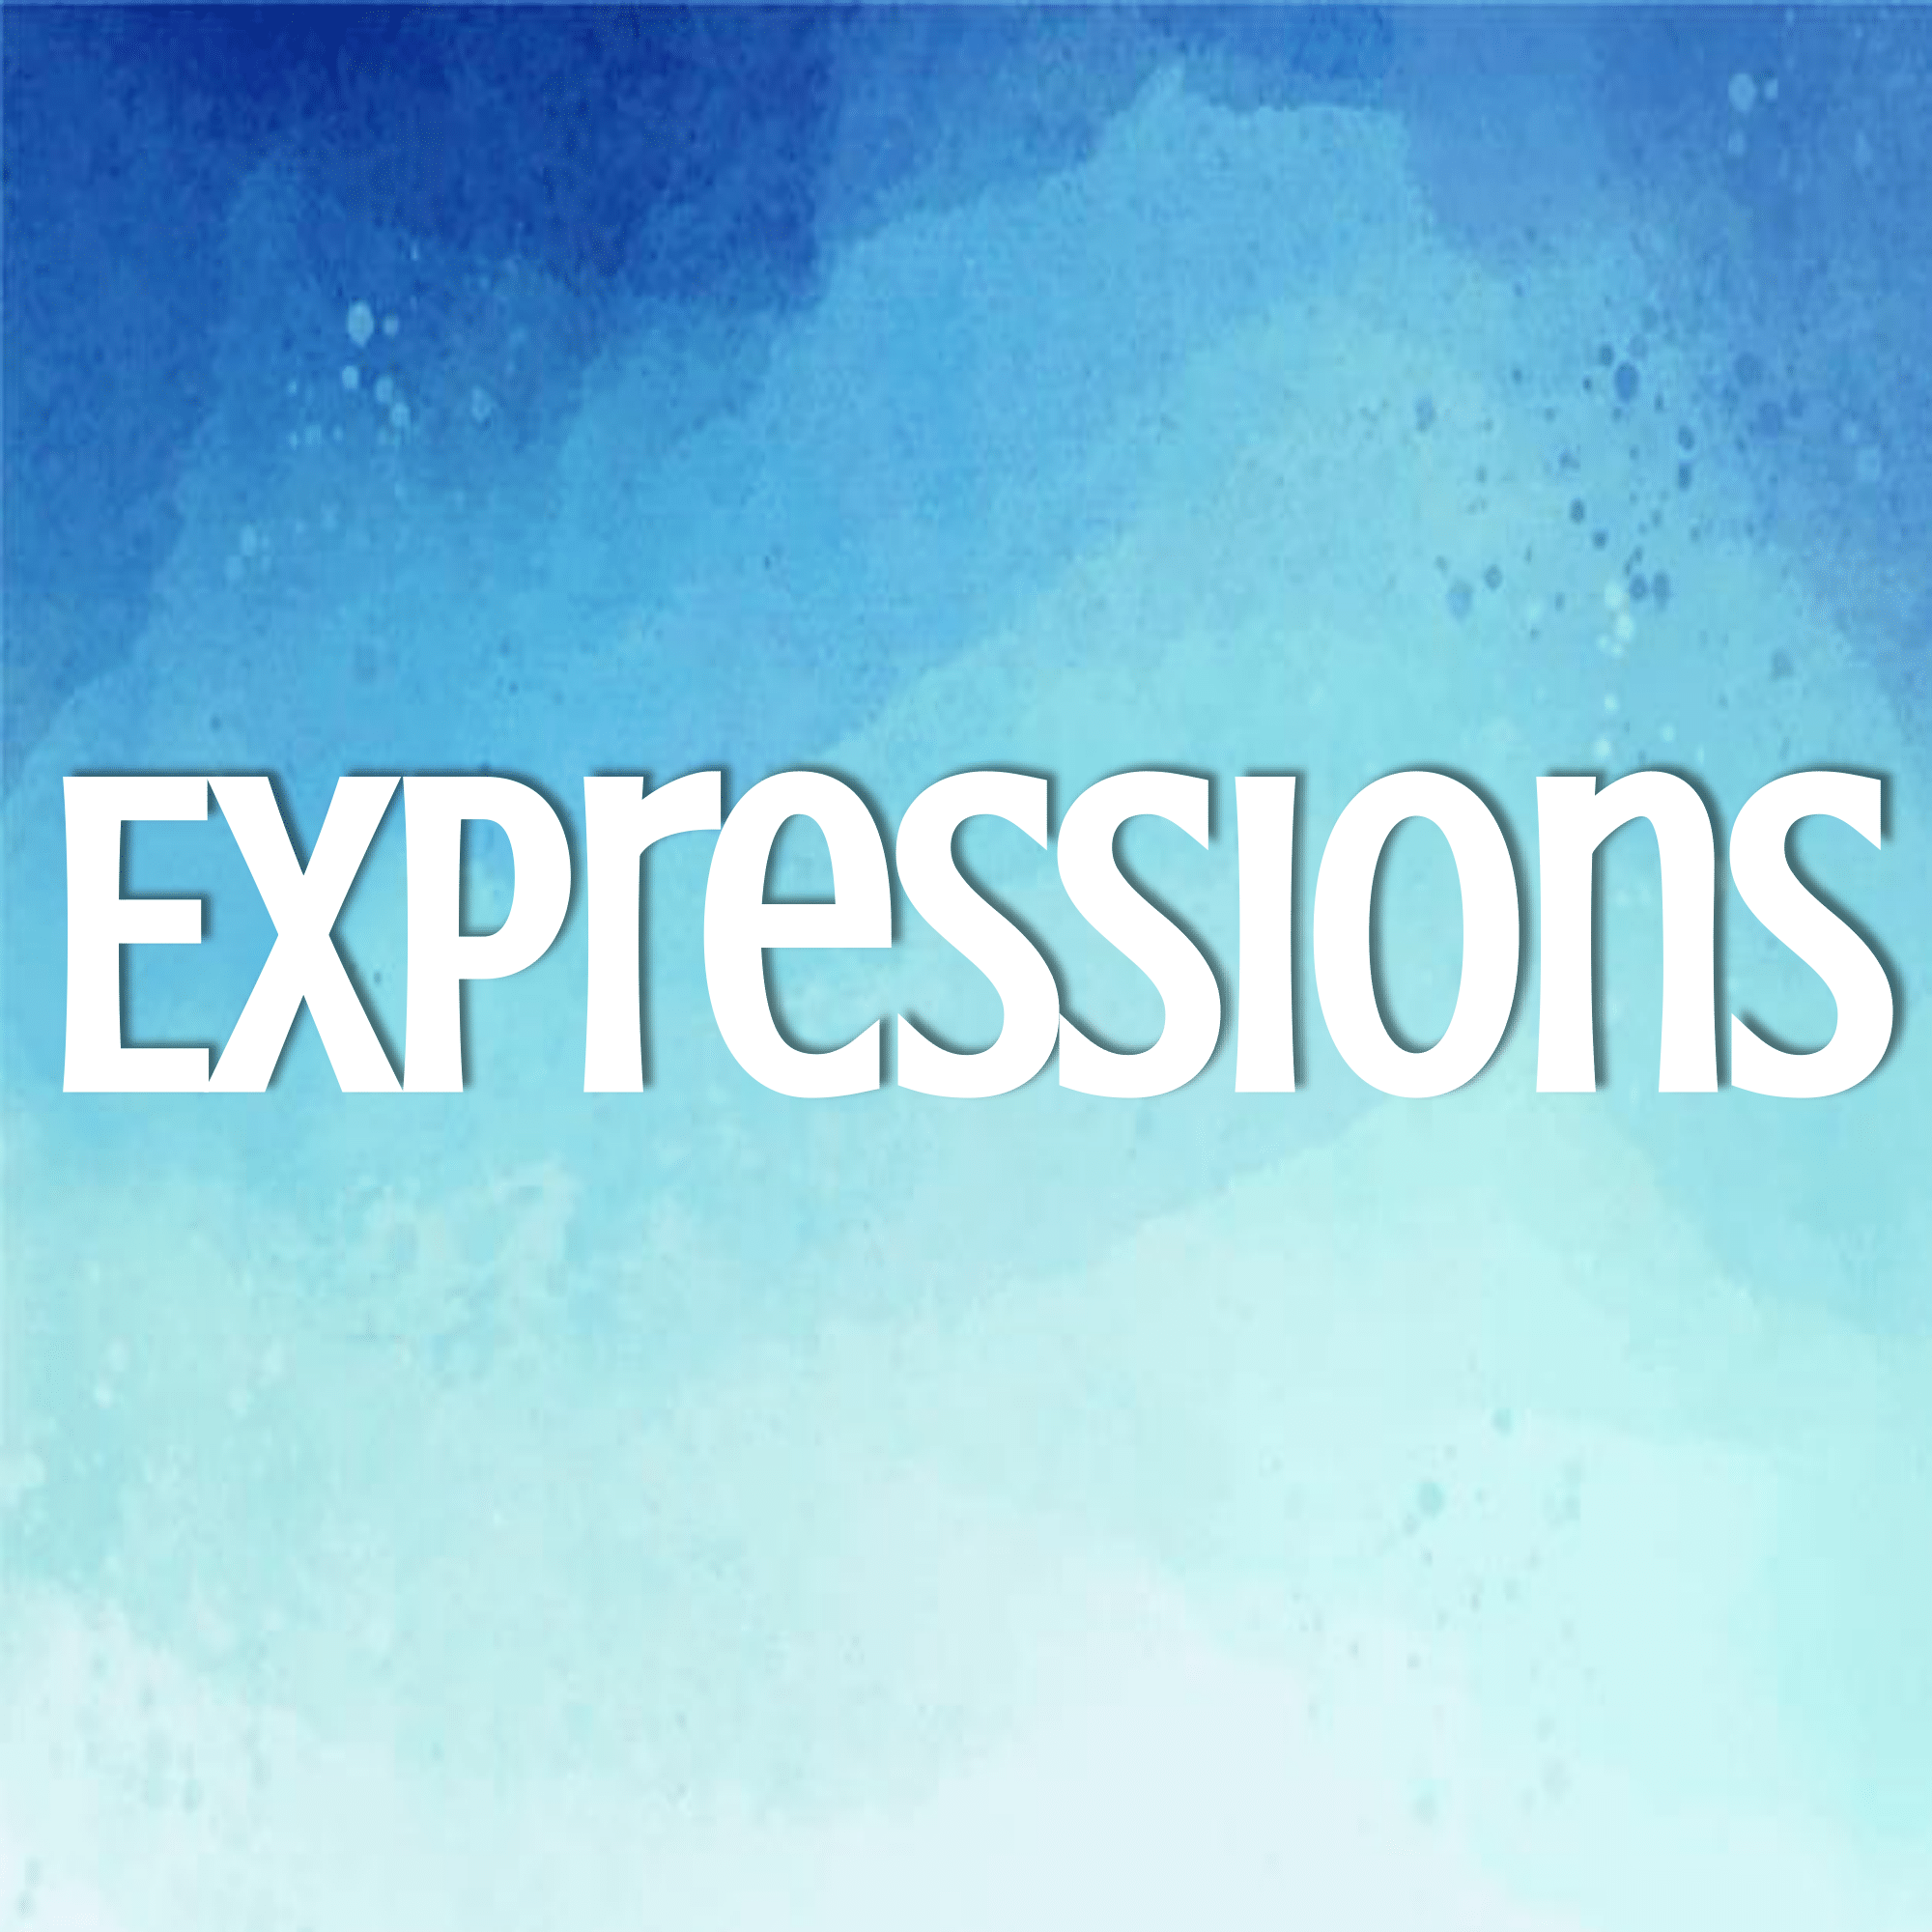 Factoring Expressions - Grade 6 - Quizizz